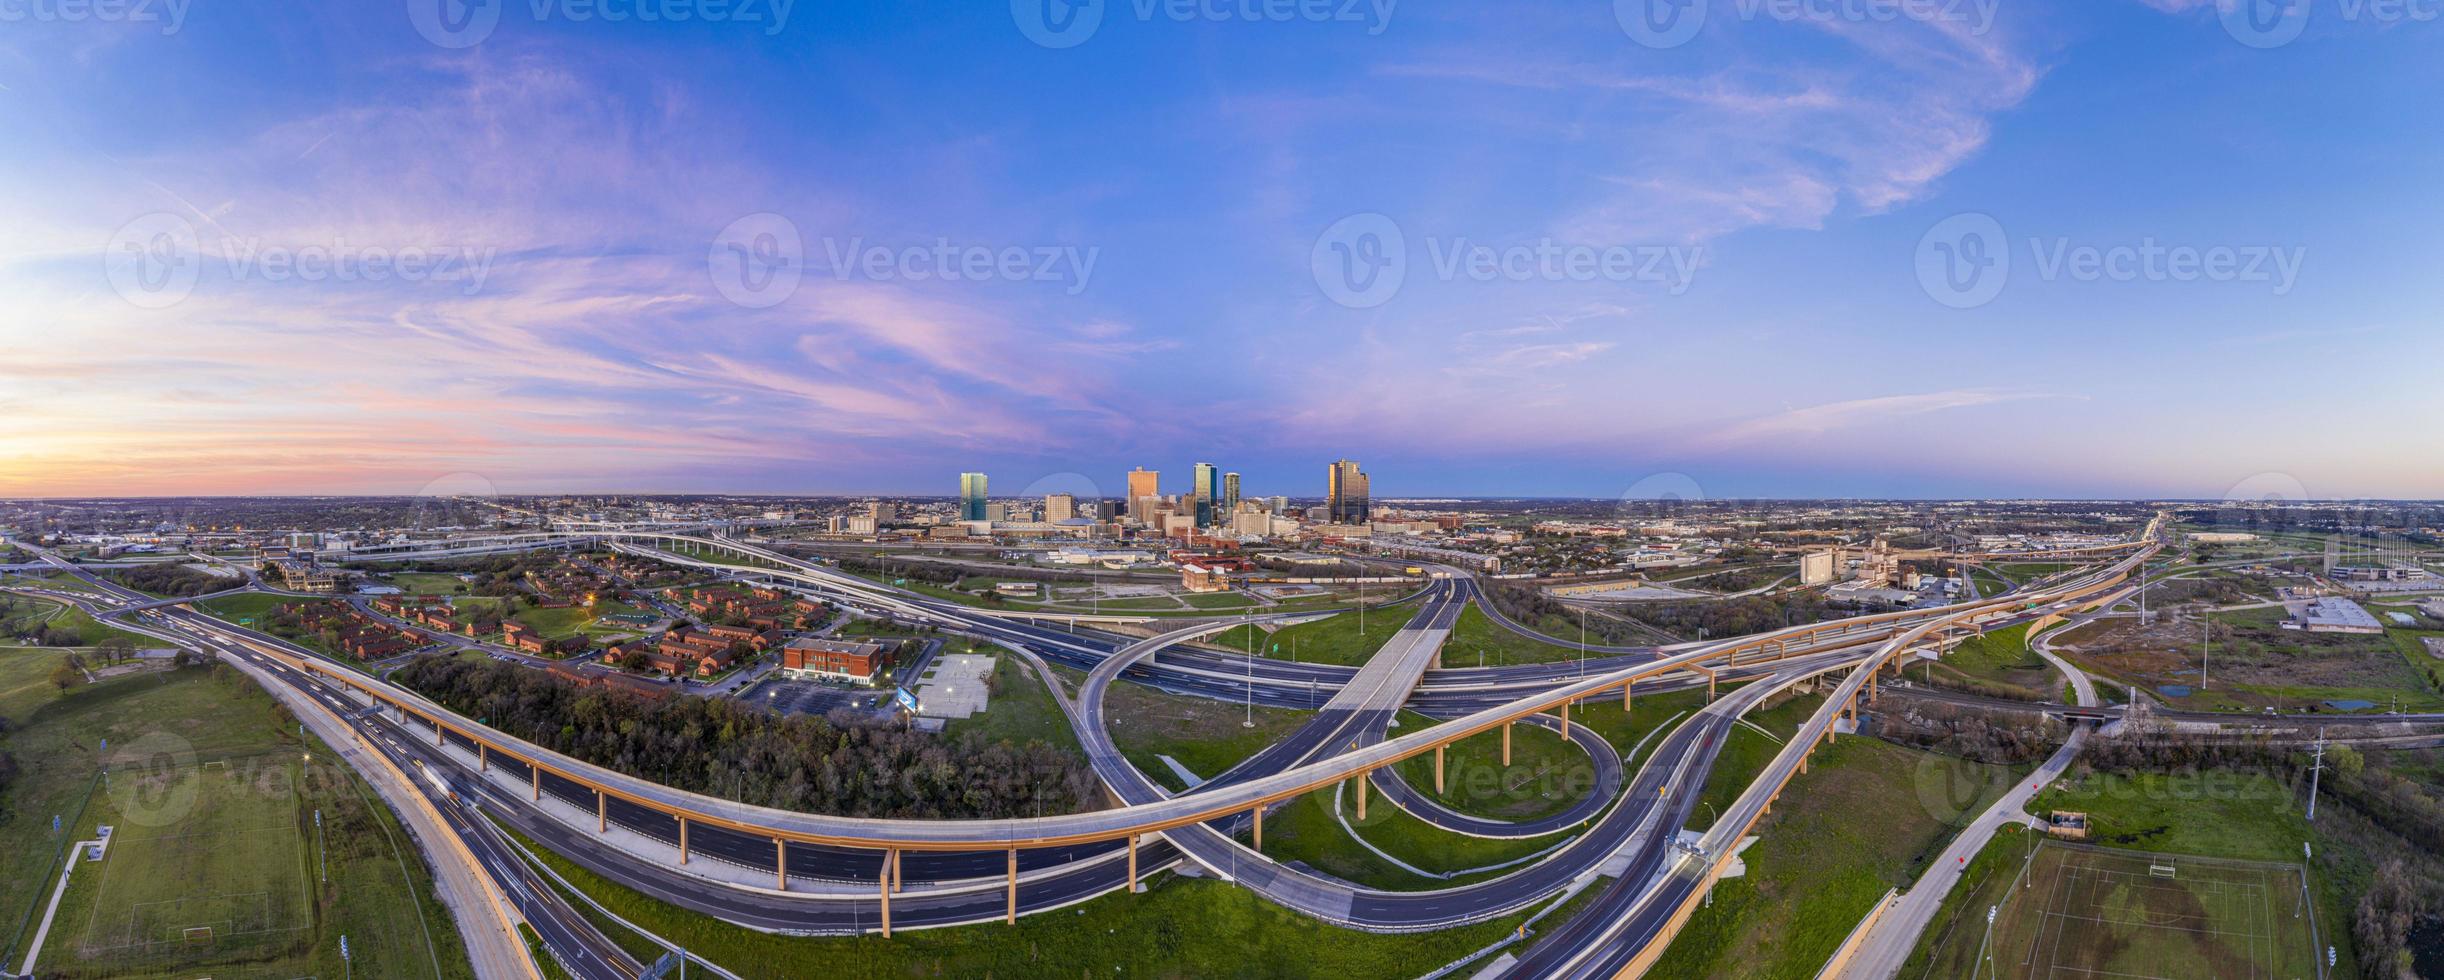 imagem panorâmica aérea do horizonte de fort worth ao nascer do sol com cruzamento de rodovias no texas foto